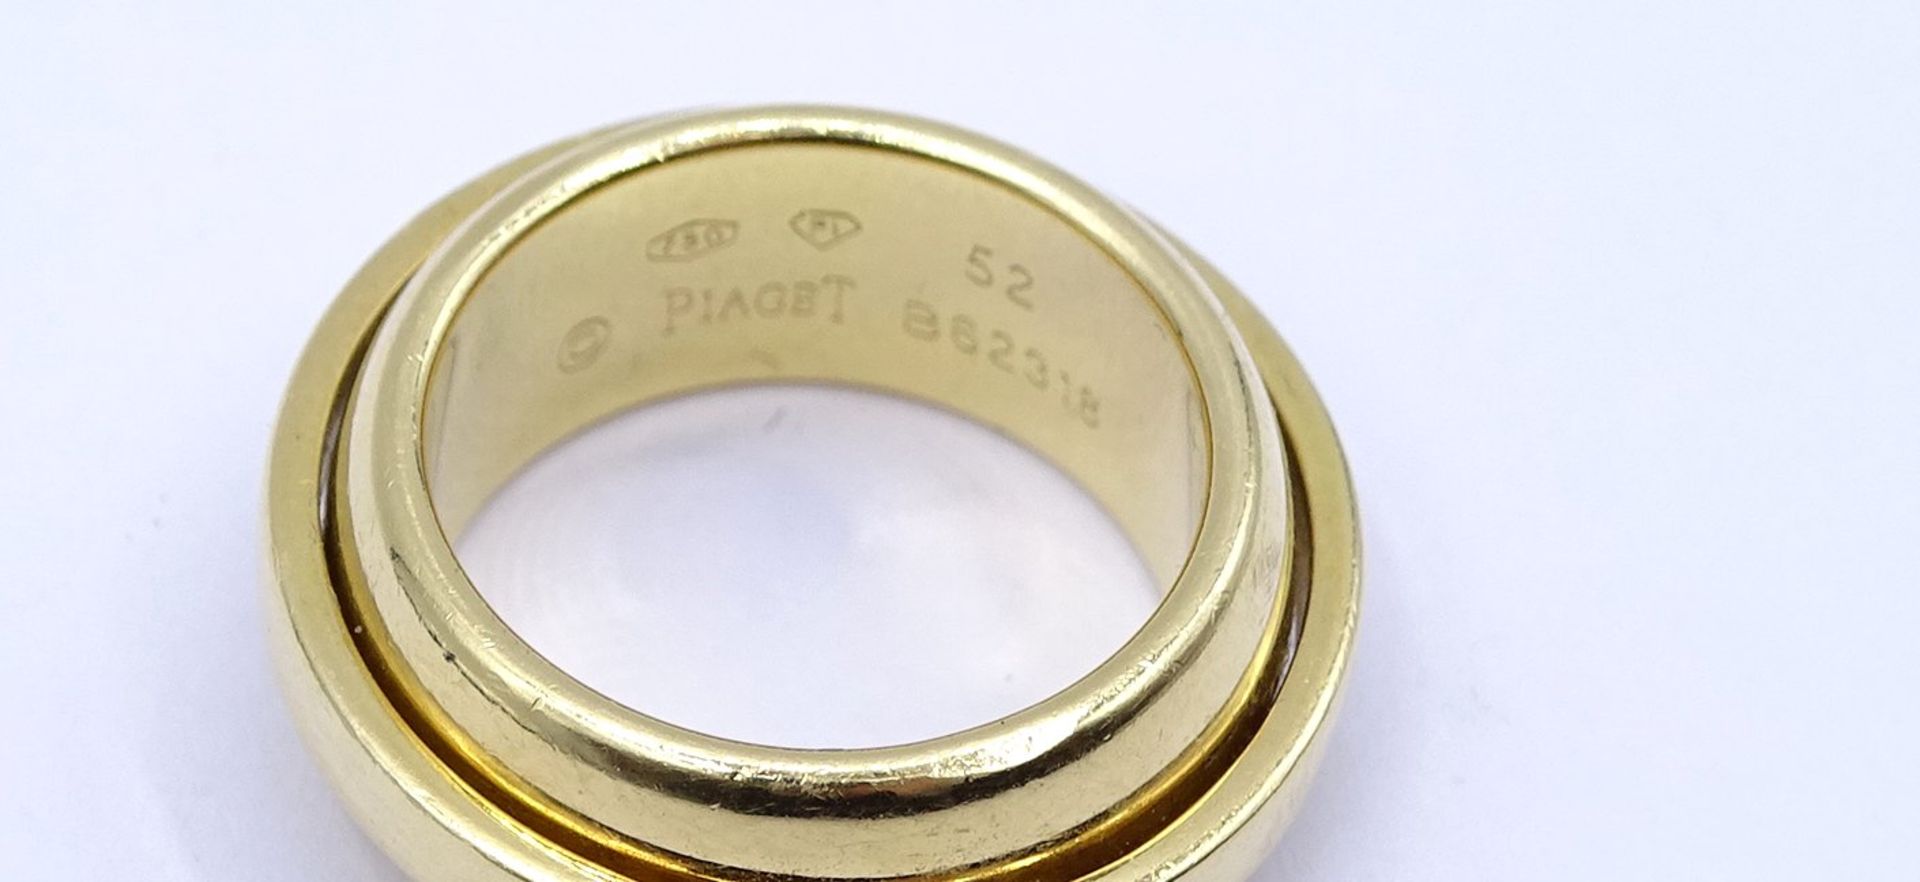 "Piaget", Goldring mit 3 Diamanten zus. 0,09ct., GG 750/000, anbei Zertifikat, 18,2g., RG 51/52 - Image 7 of 10